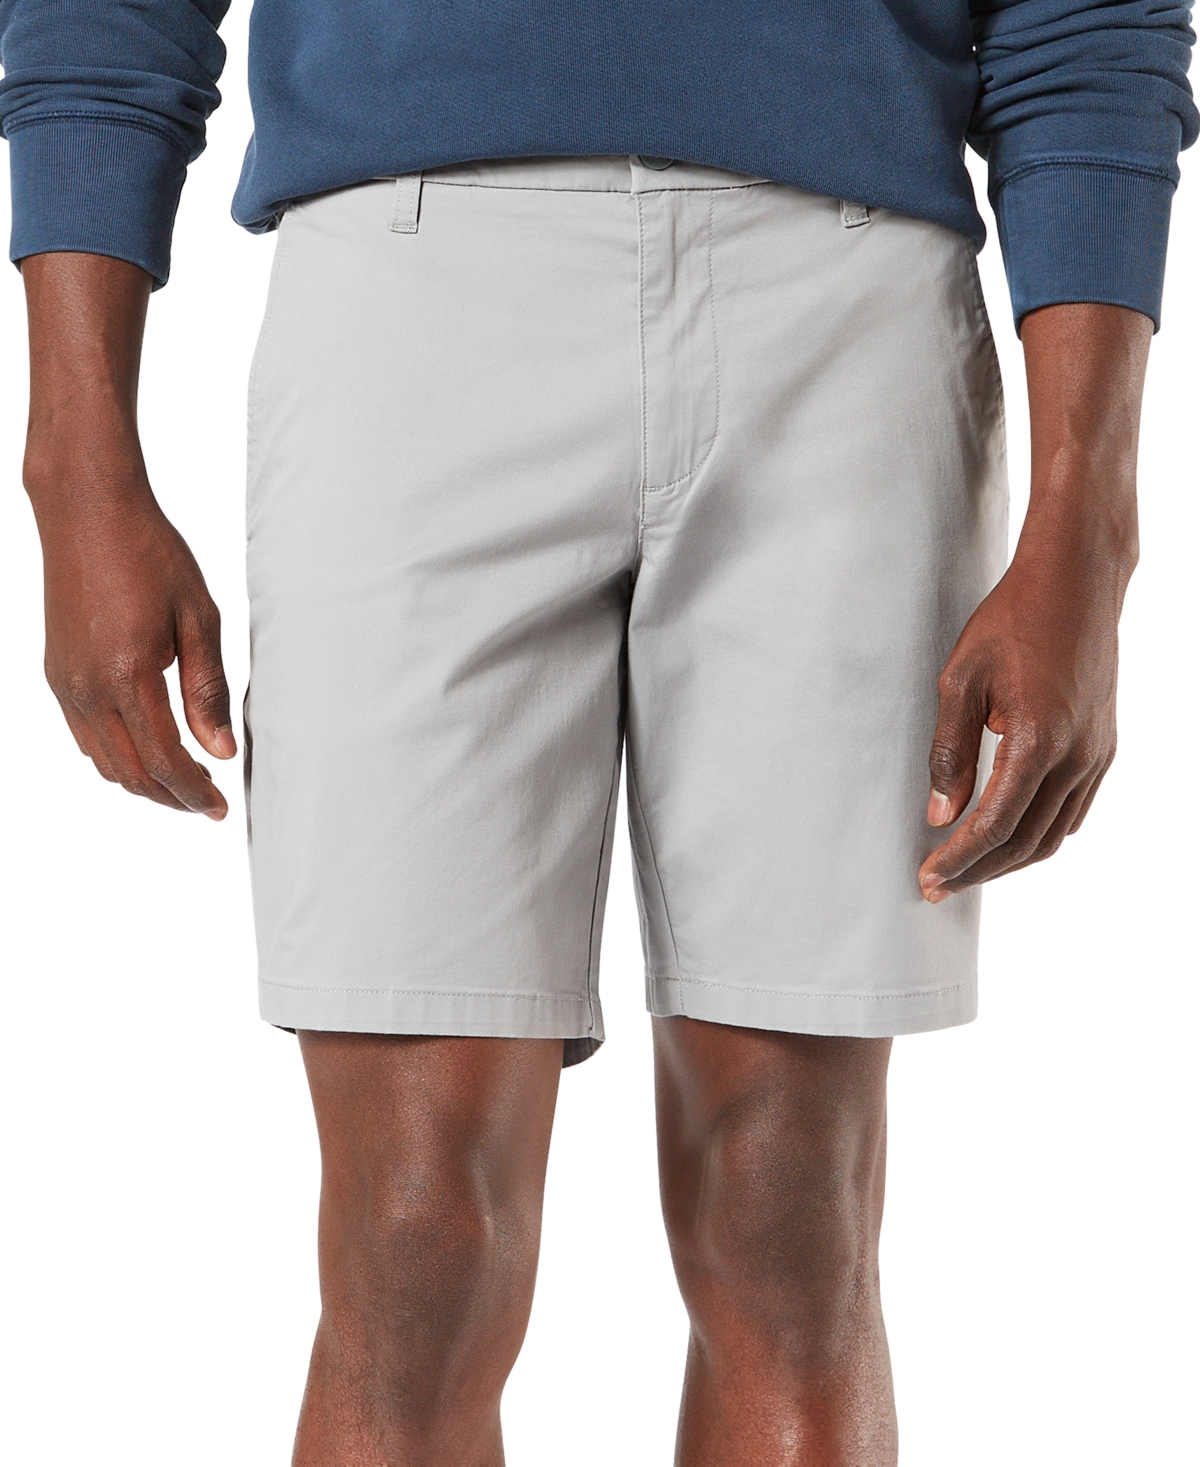 Men's Ultimate Supreme Flex Stretch Solid 9" Shorts - Navy Blazer Chambray